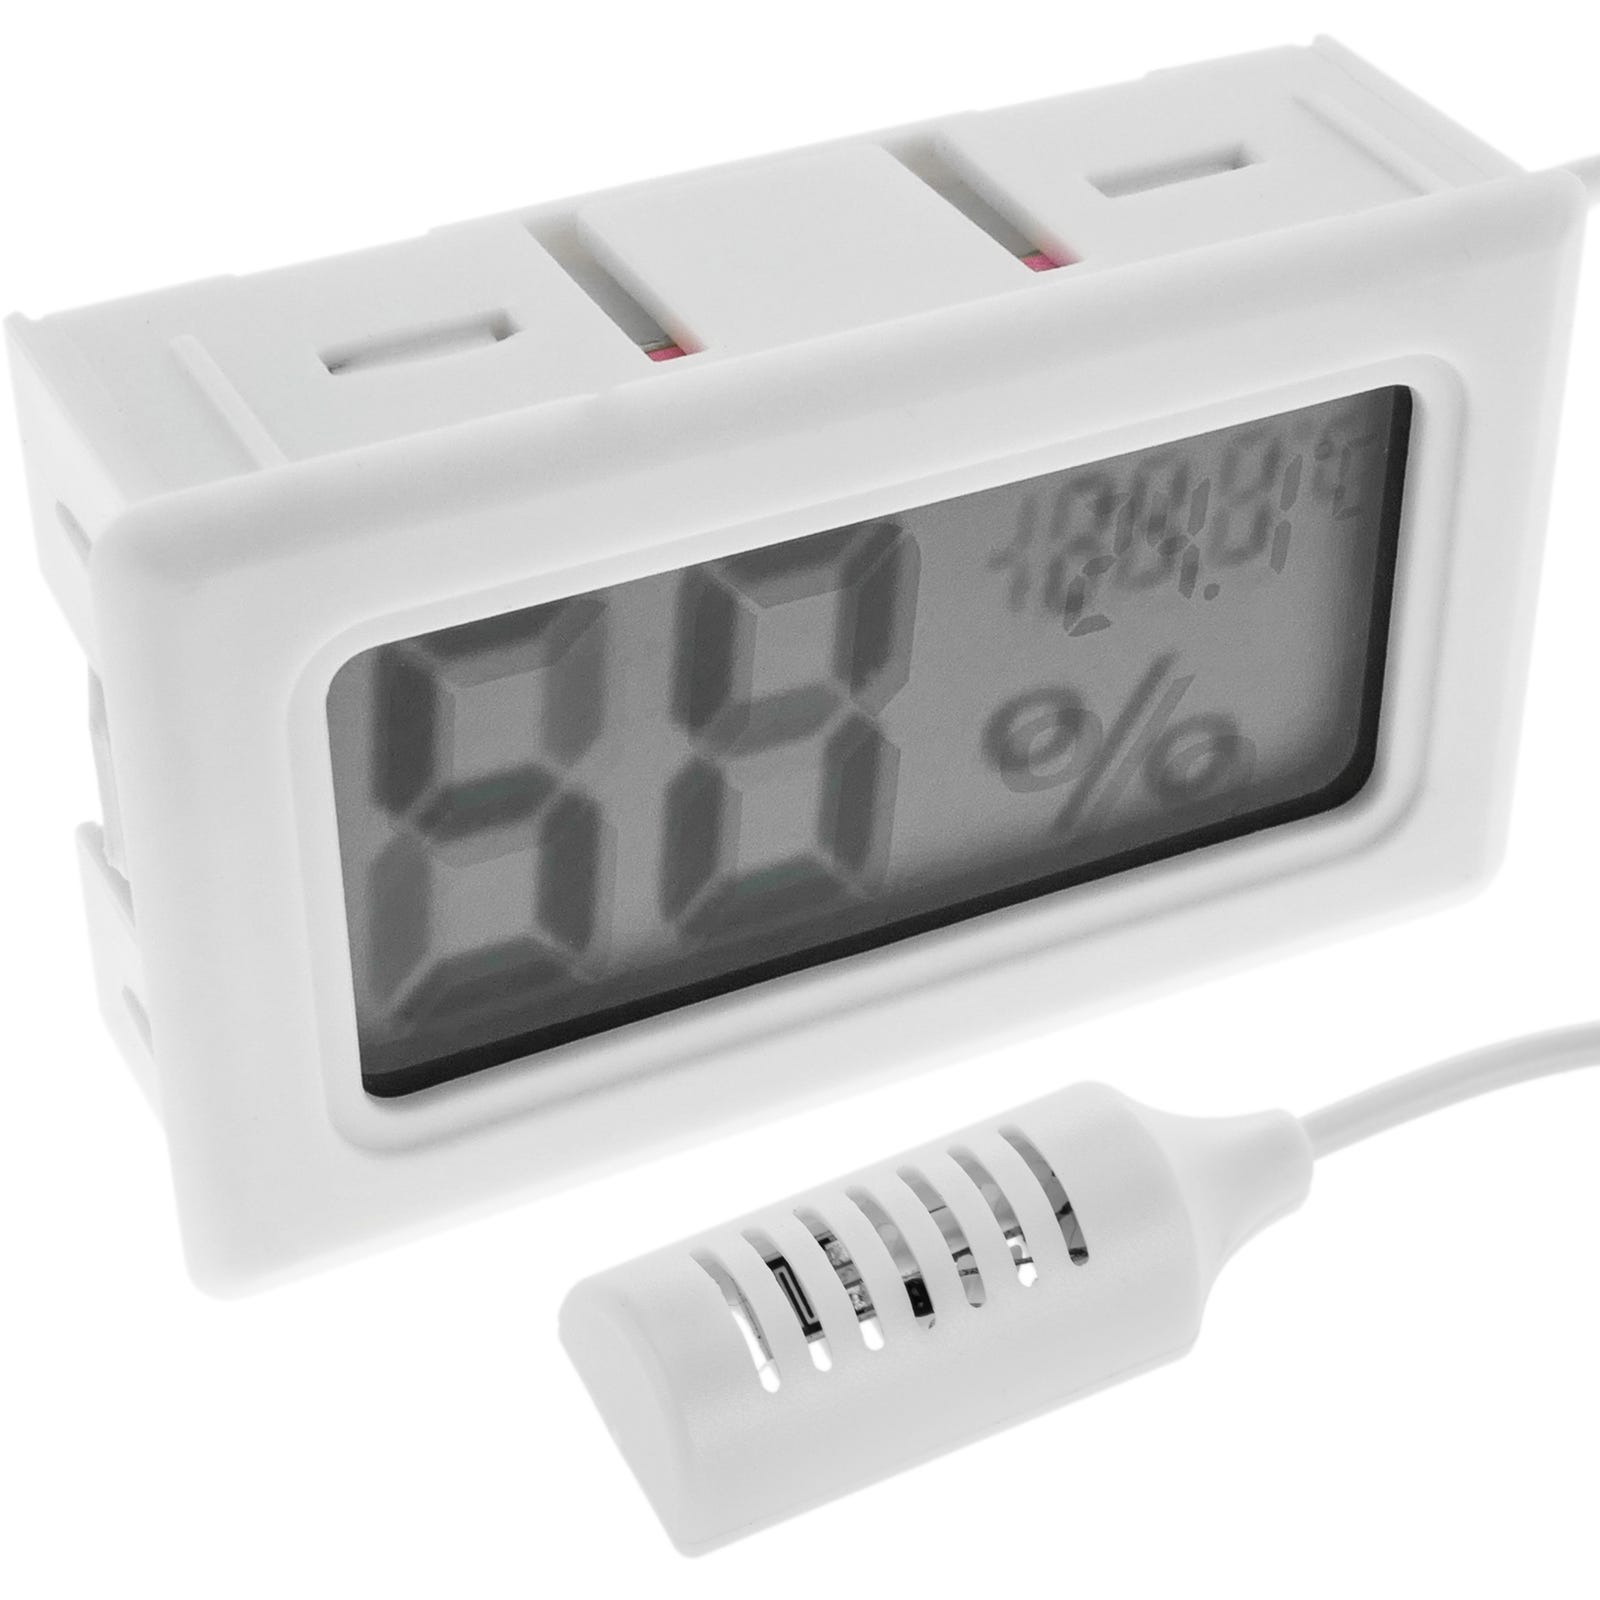 Acquista Mini termometro da interno LCD digitale temperatura ambiente  igrometro sensore misuratore di umidità termometro da interno temperatura